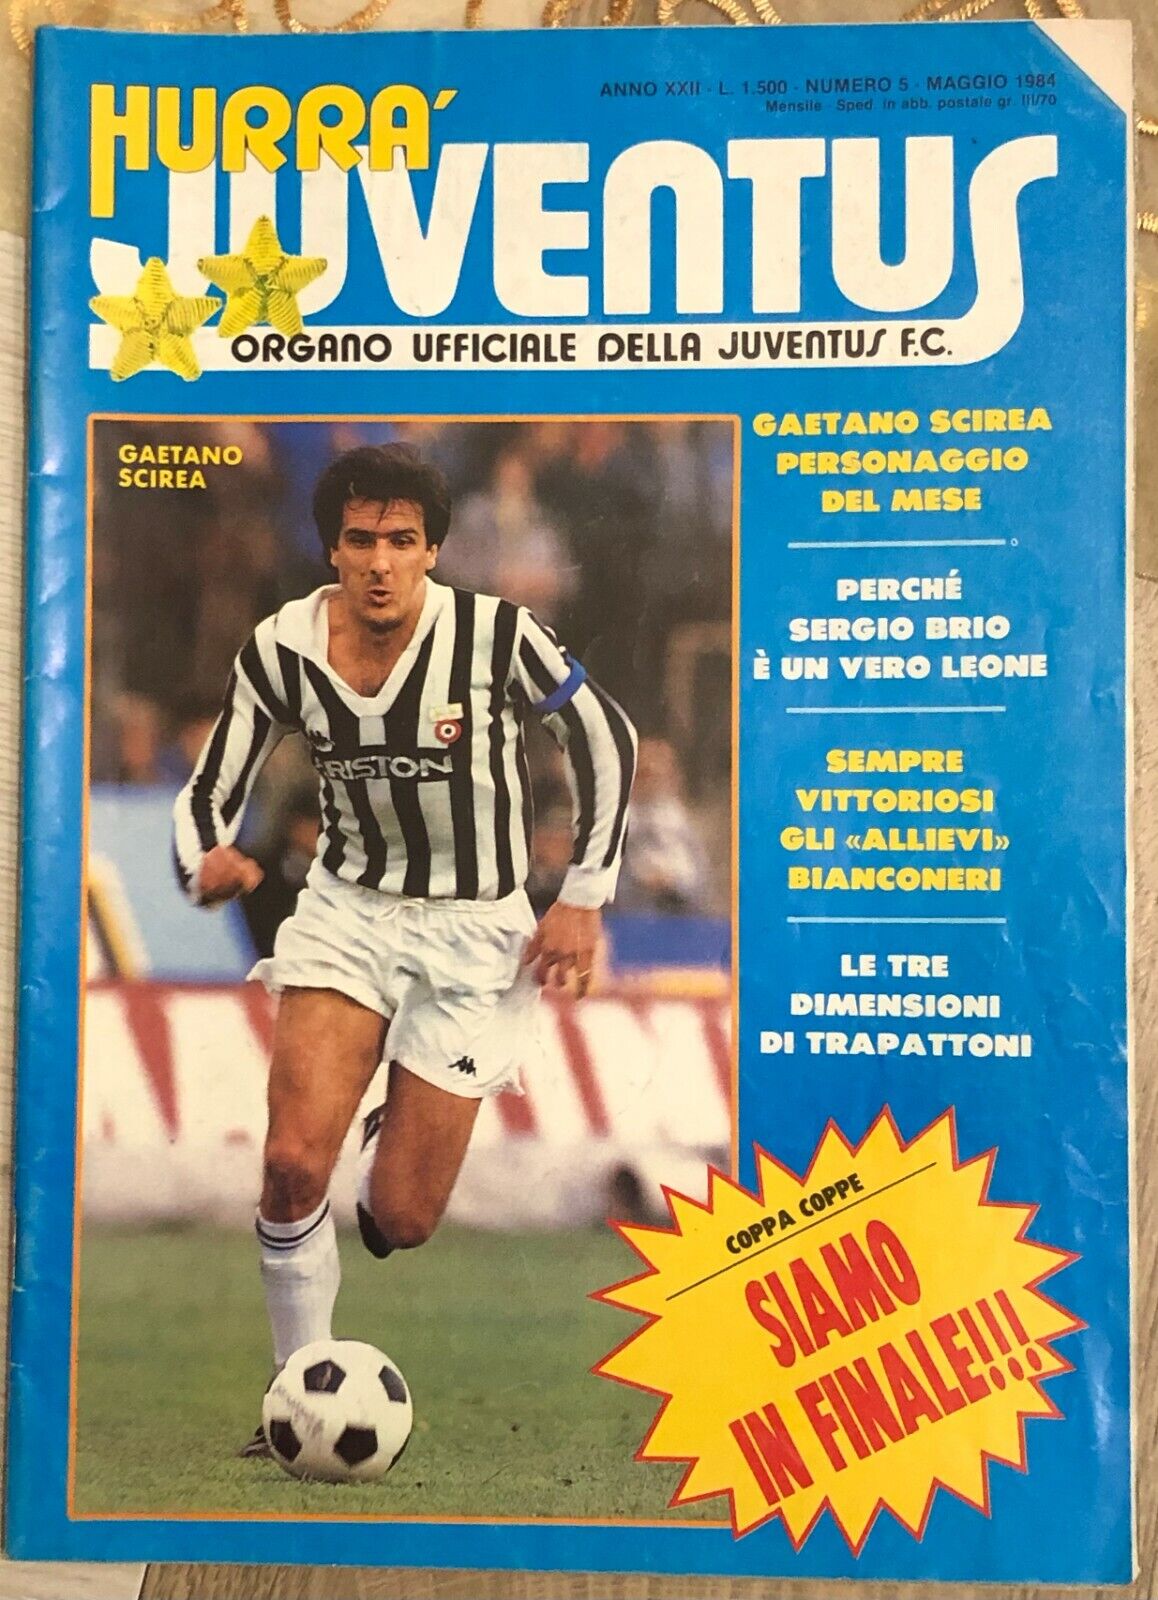 Hurr? Juventus n. 5/1984 di Aa.vv.,  1984,  Juventus F.c.